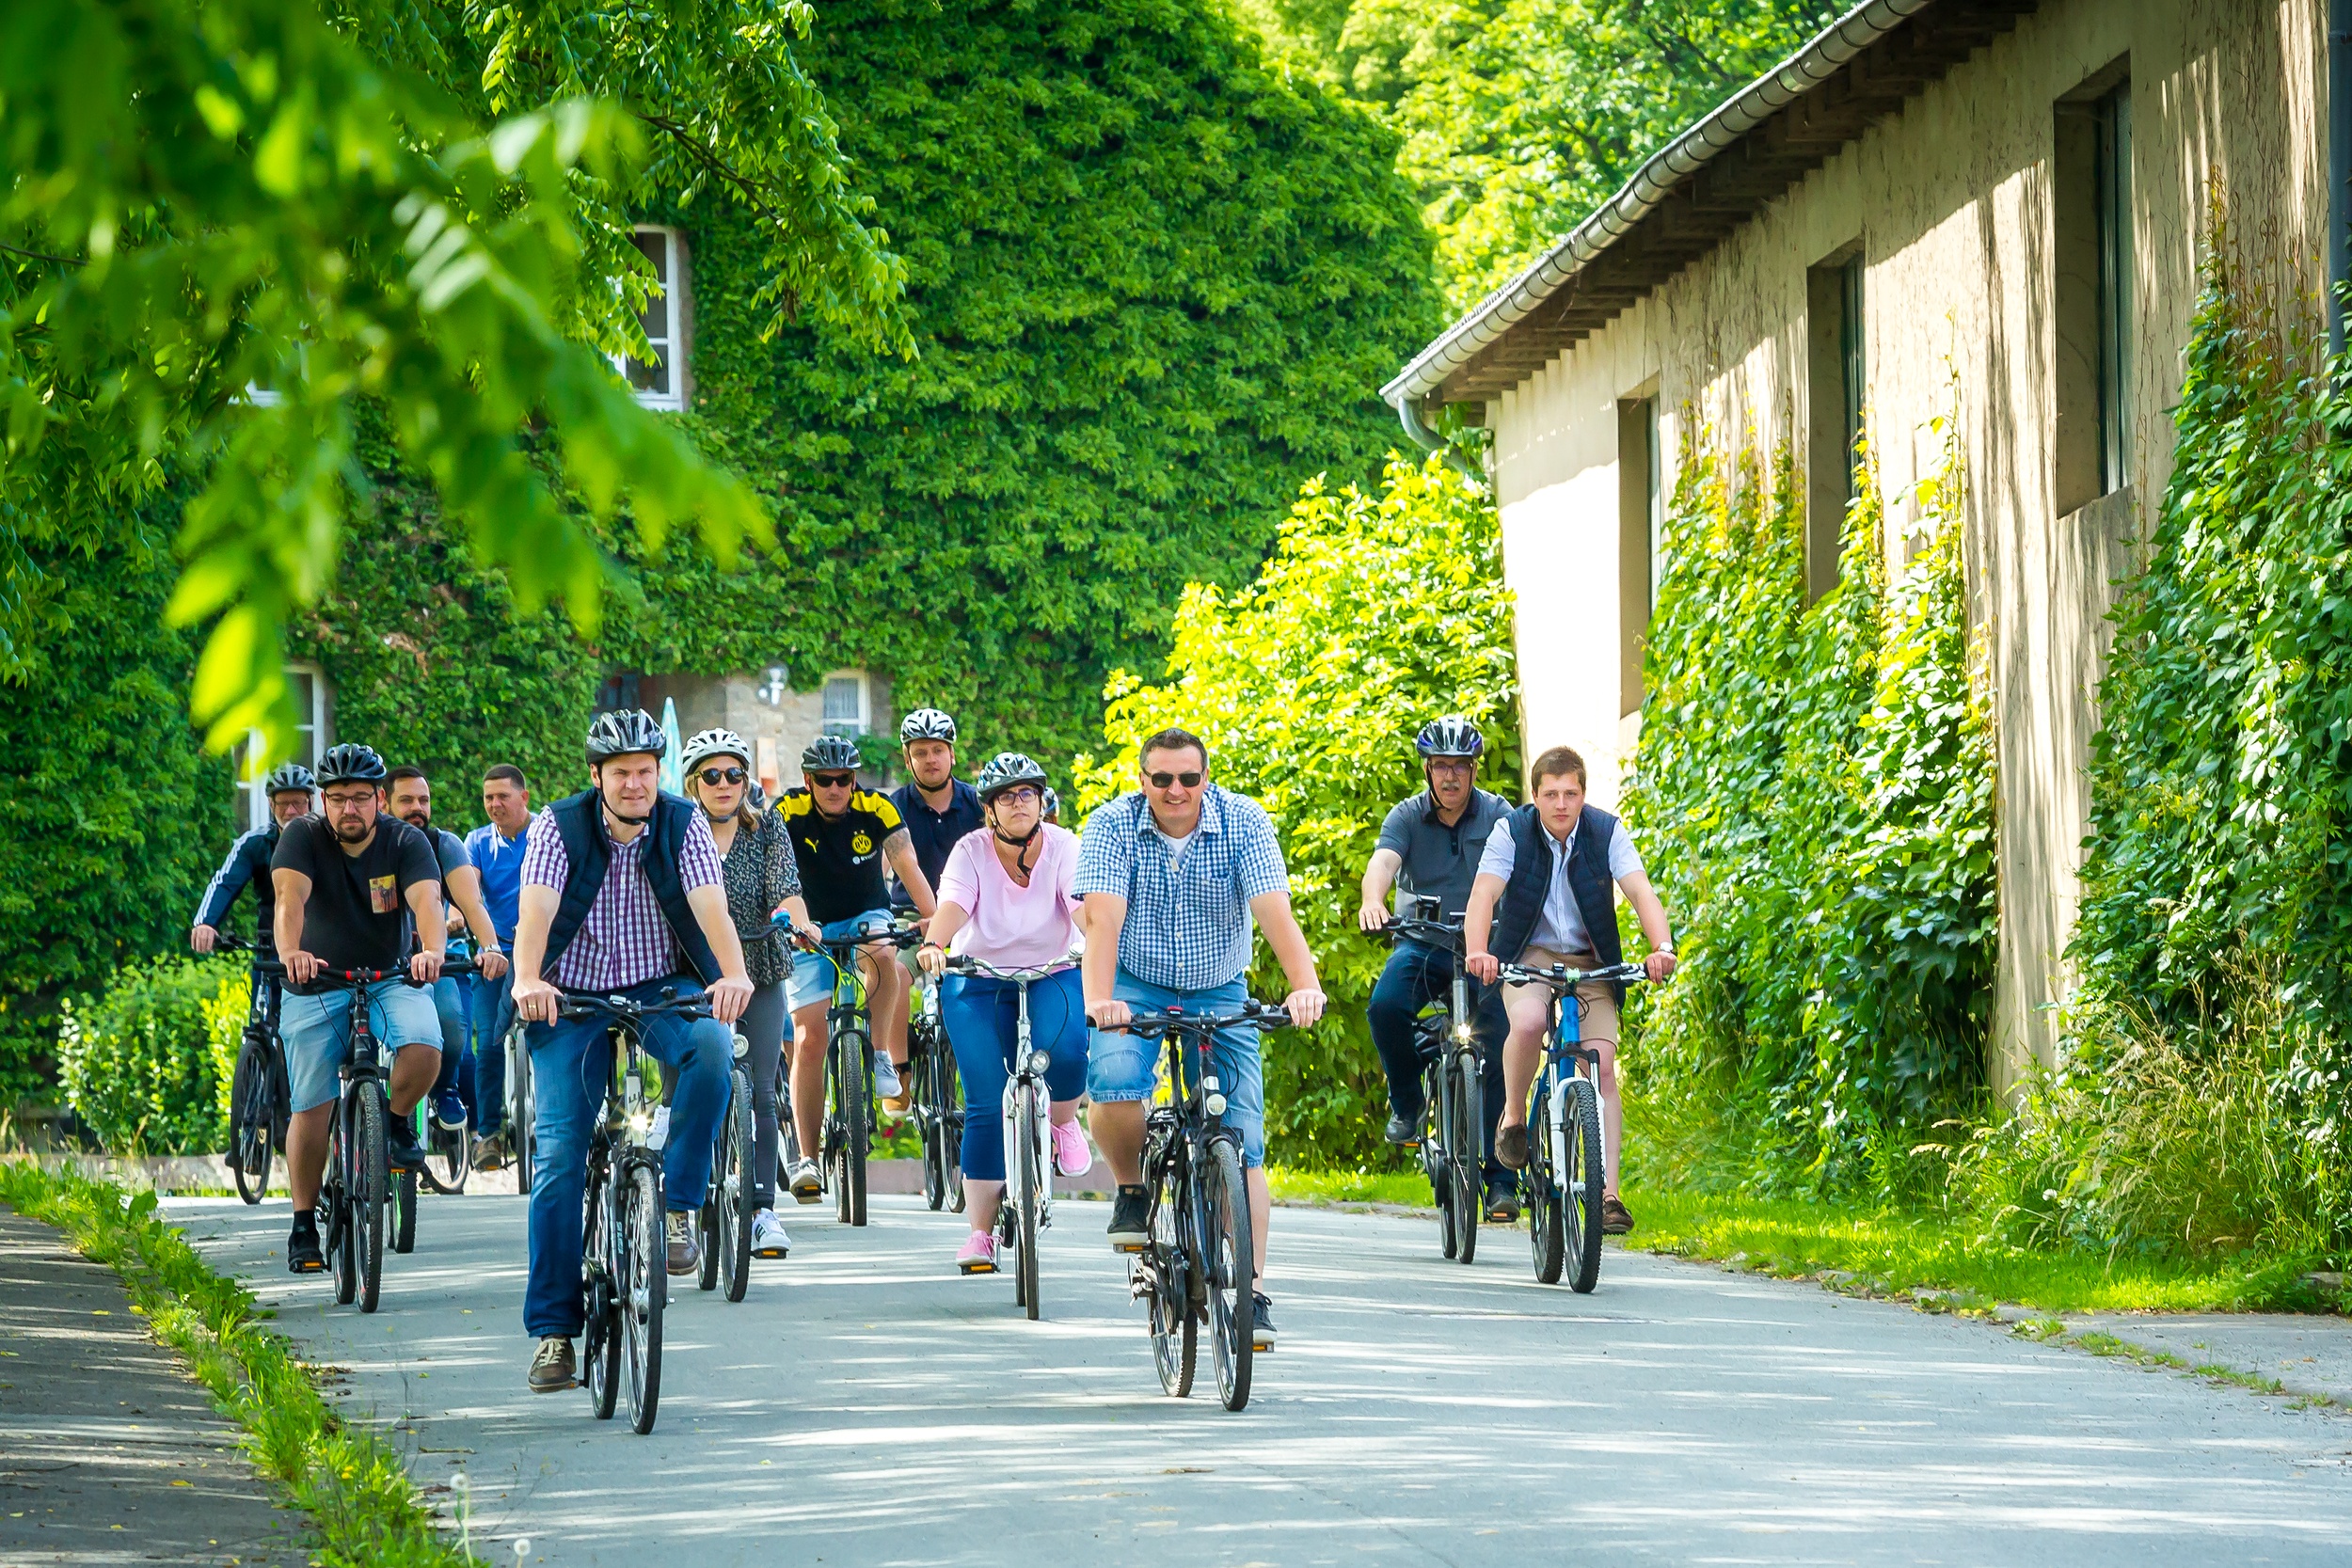 CDU-Kandidaten aus Willebadessen bei einer Radtour